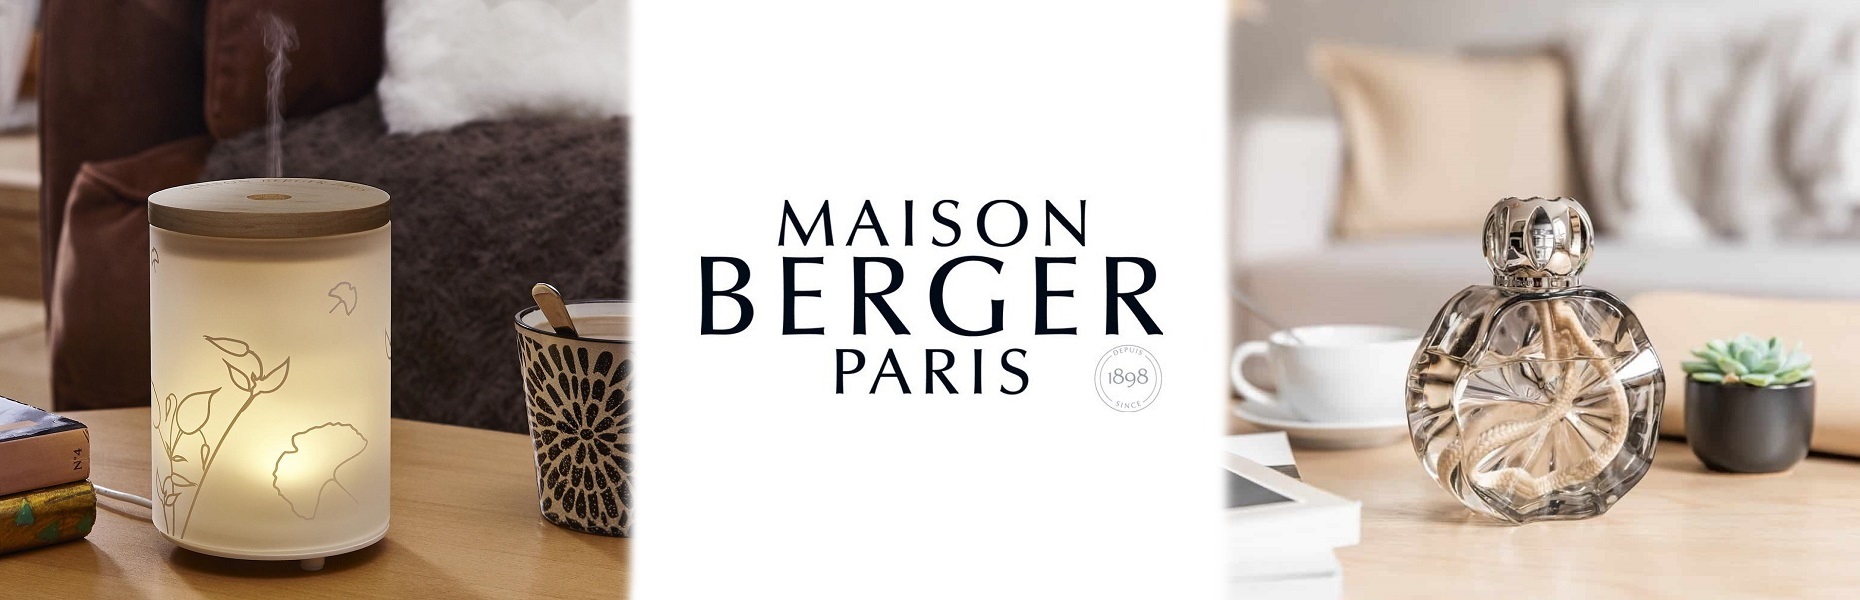 Shop Online Maison Berger Paris - Teresa Pizzigallo